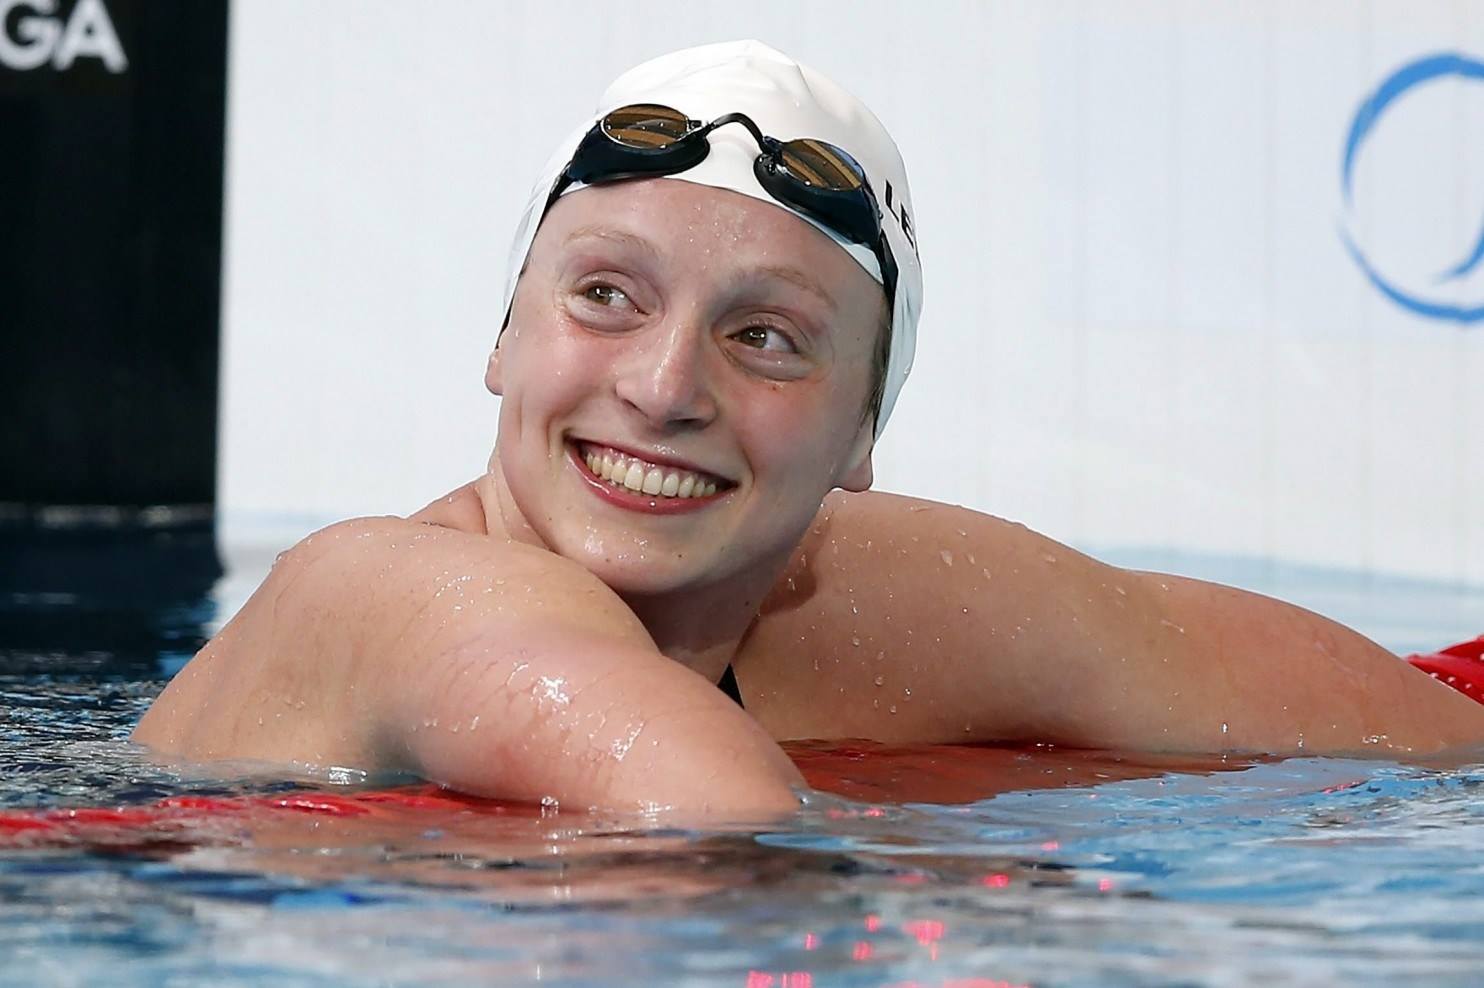 4 août 2015, Katie Ledecky bat le record du monde en nage libre